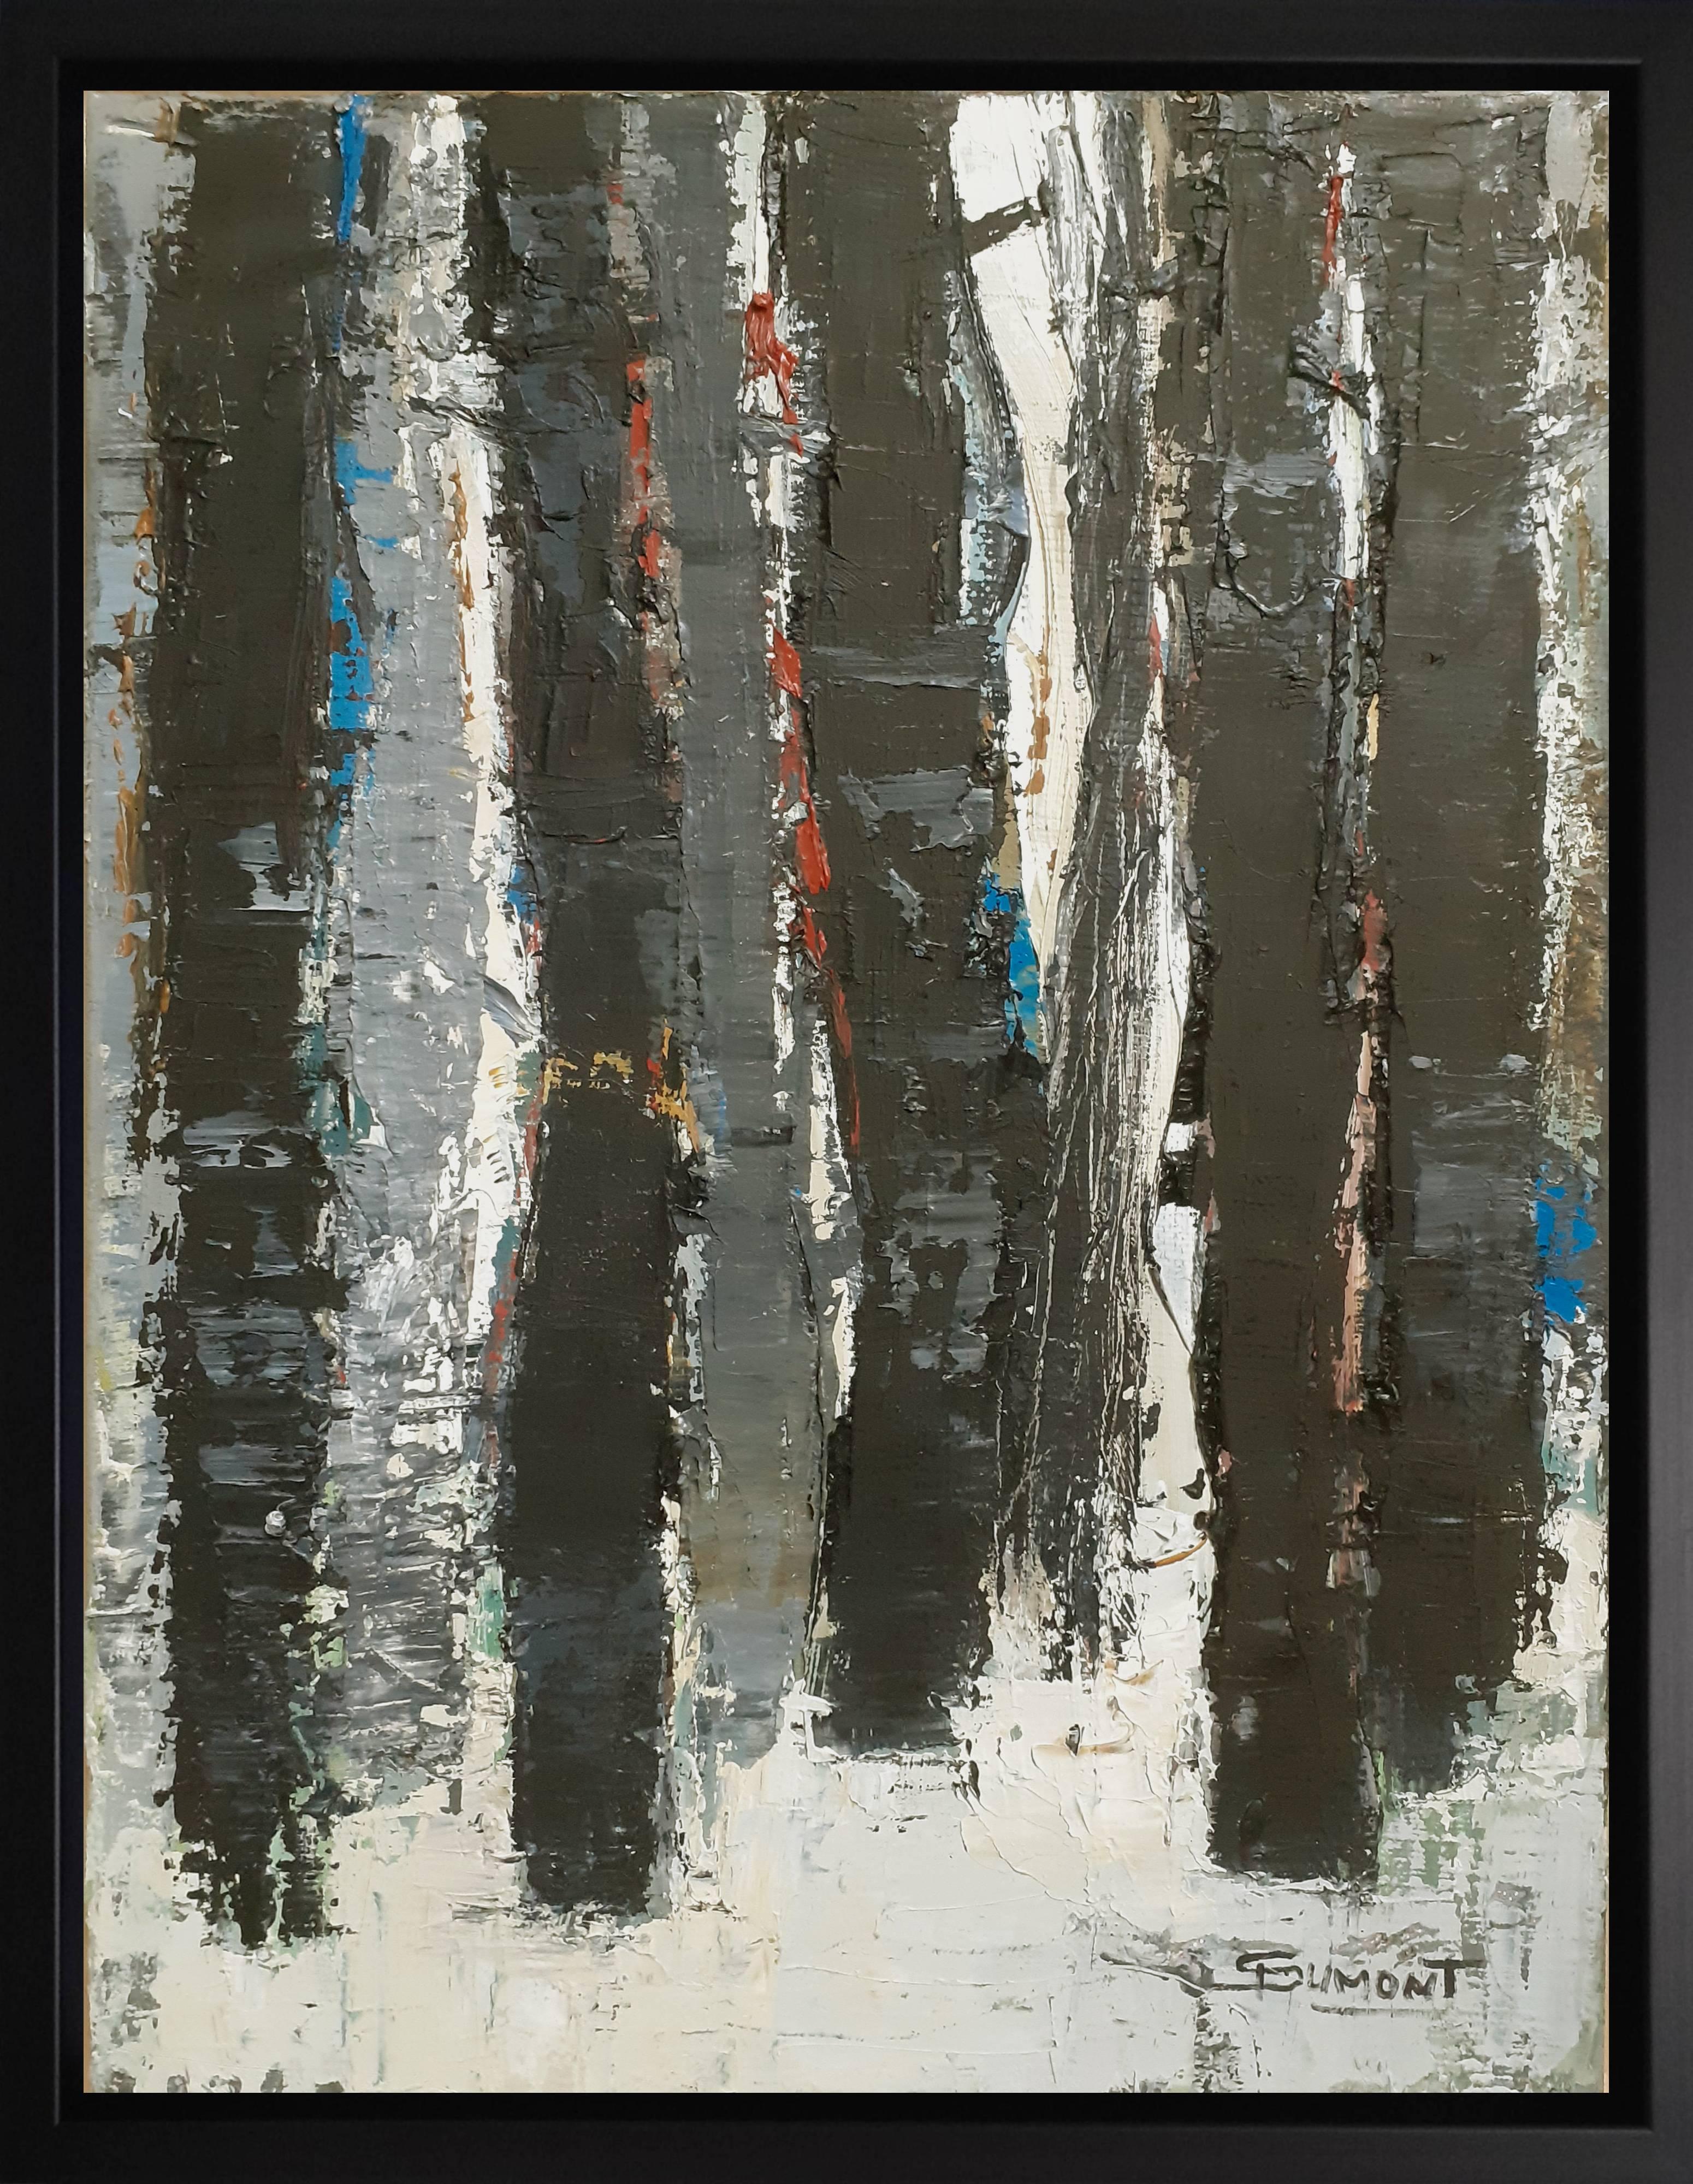 Landscape Painting SOPHIE DUMONT - FORÊT PROFONDE, minimalisme abstrait, huile sur toile, expressionnisme, arbre noir